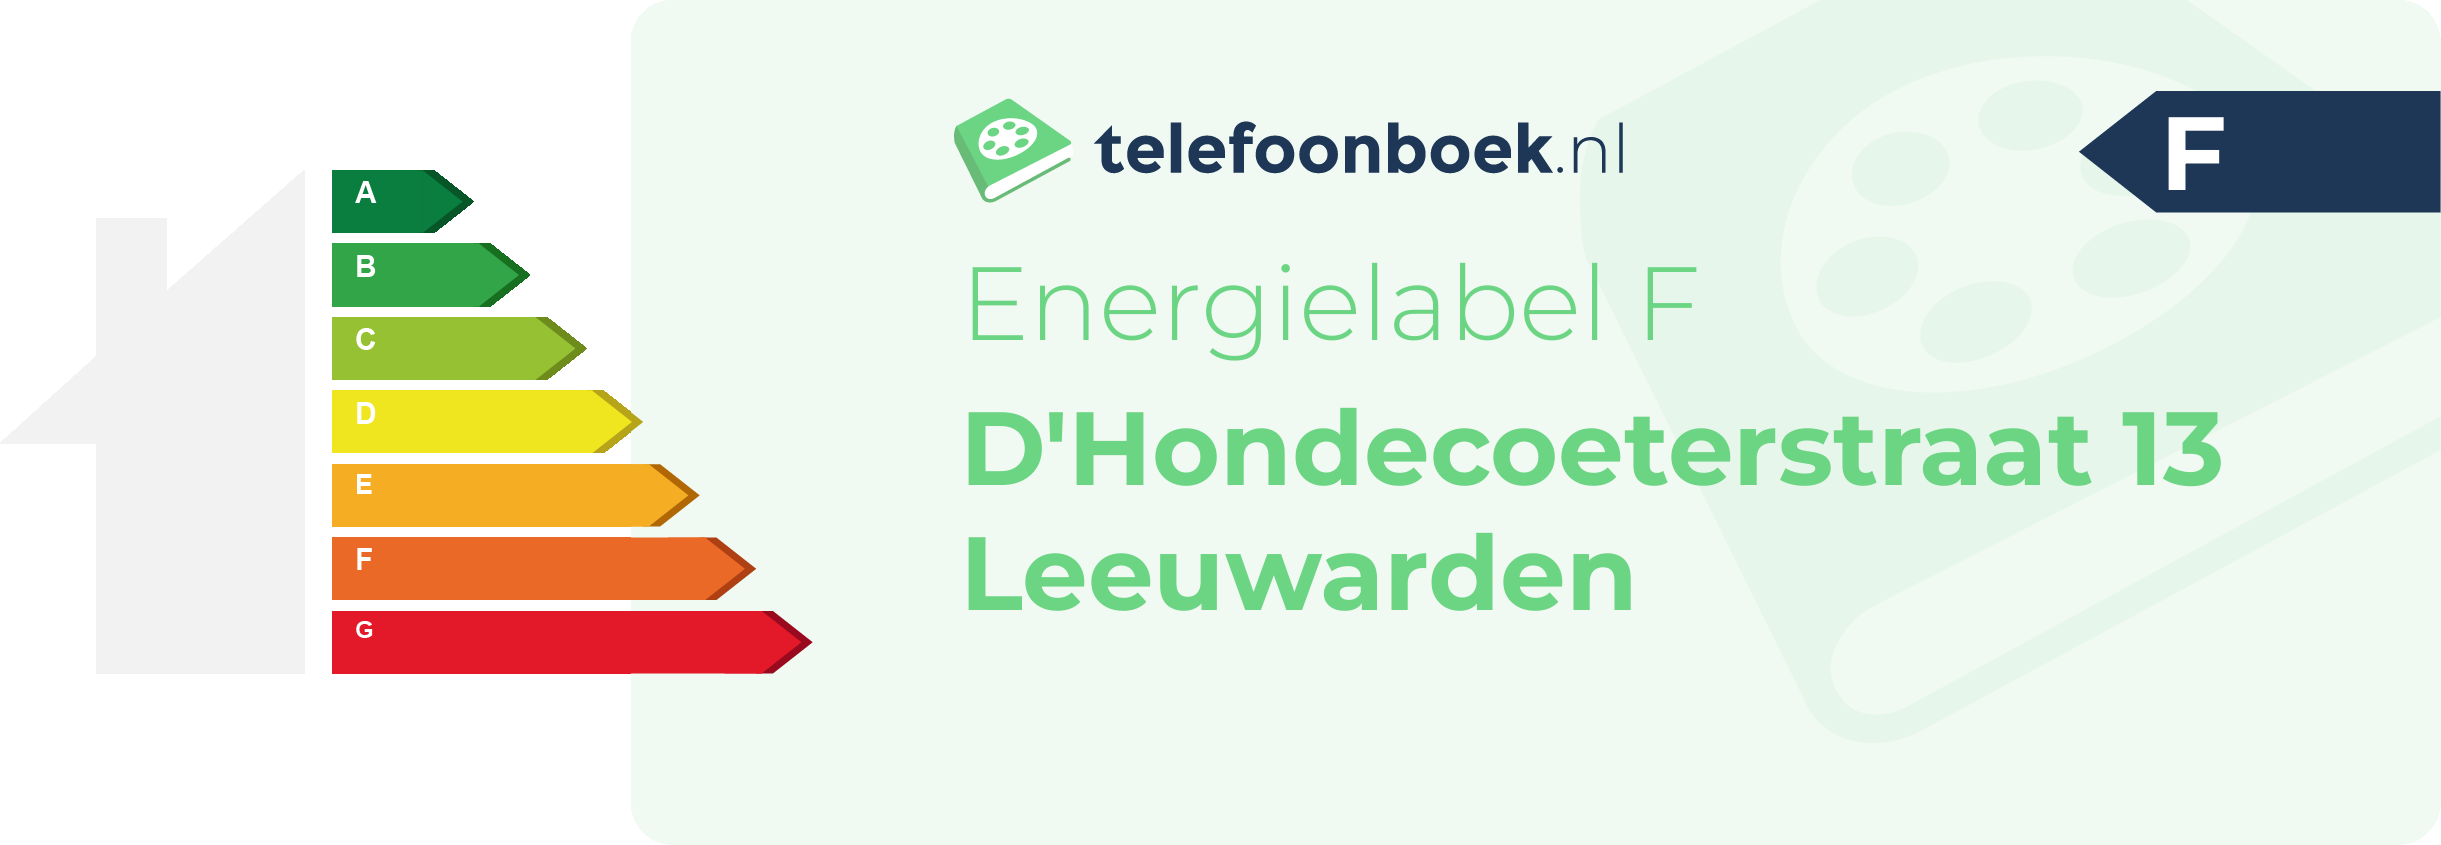 Energielabel D'Hondecoeterstraat 13 Leeuwarden